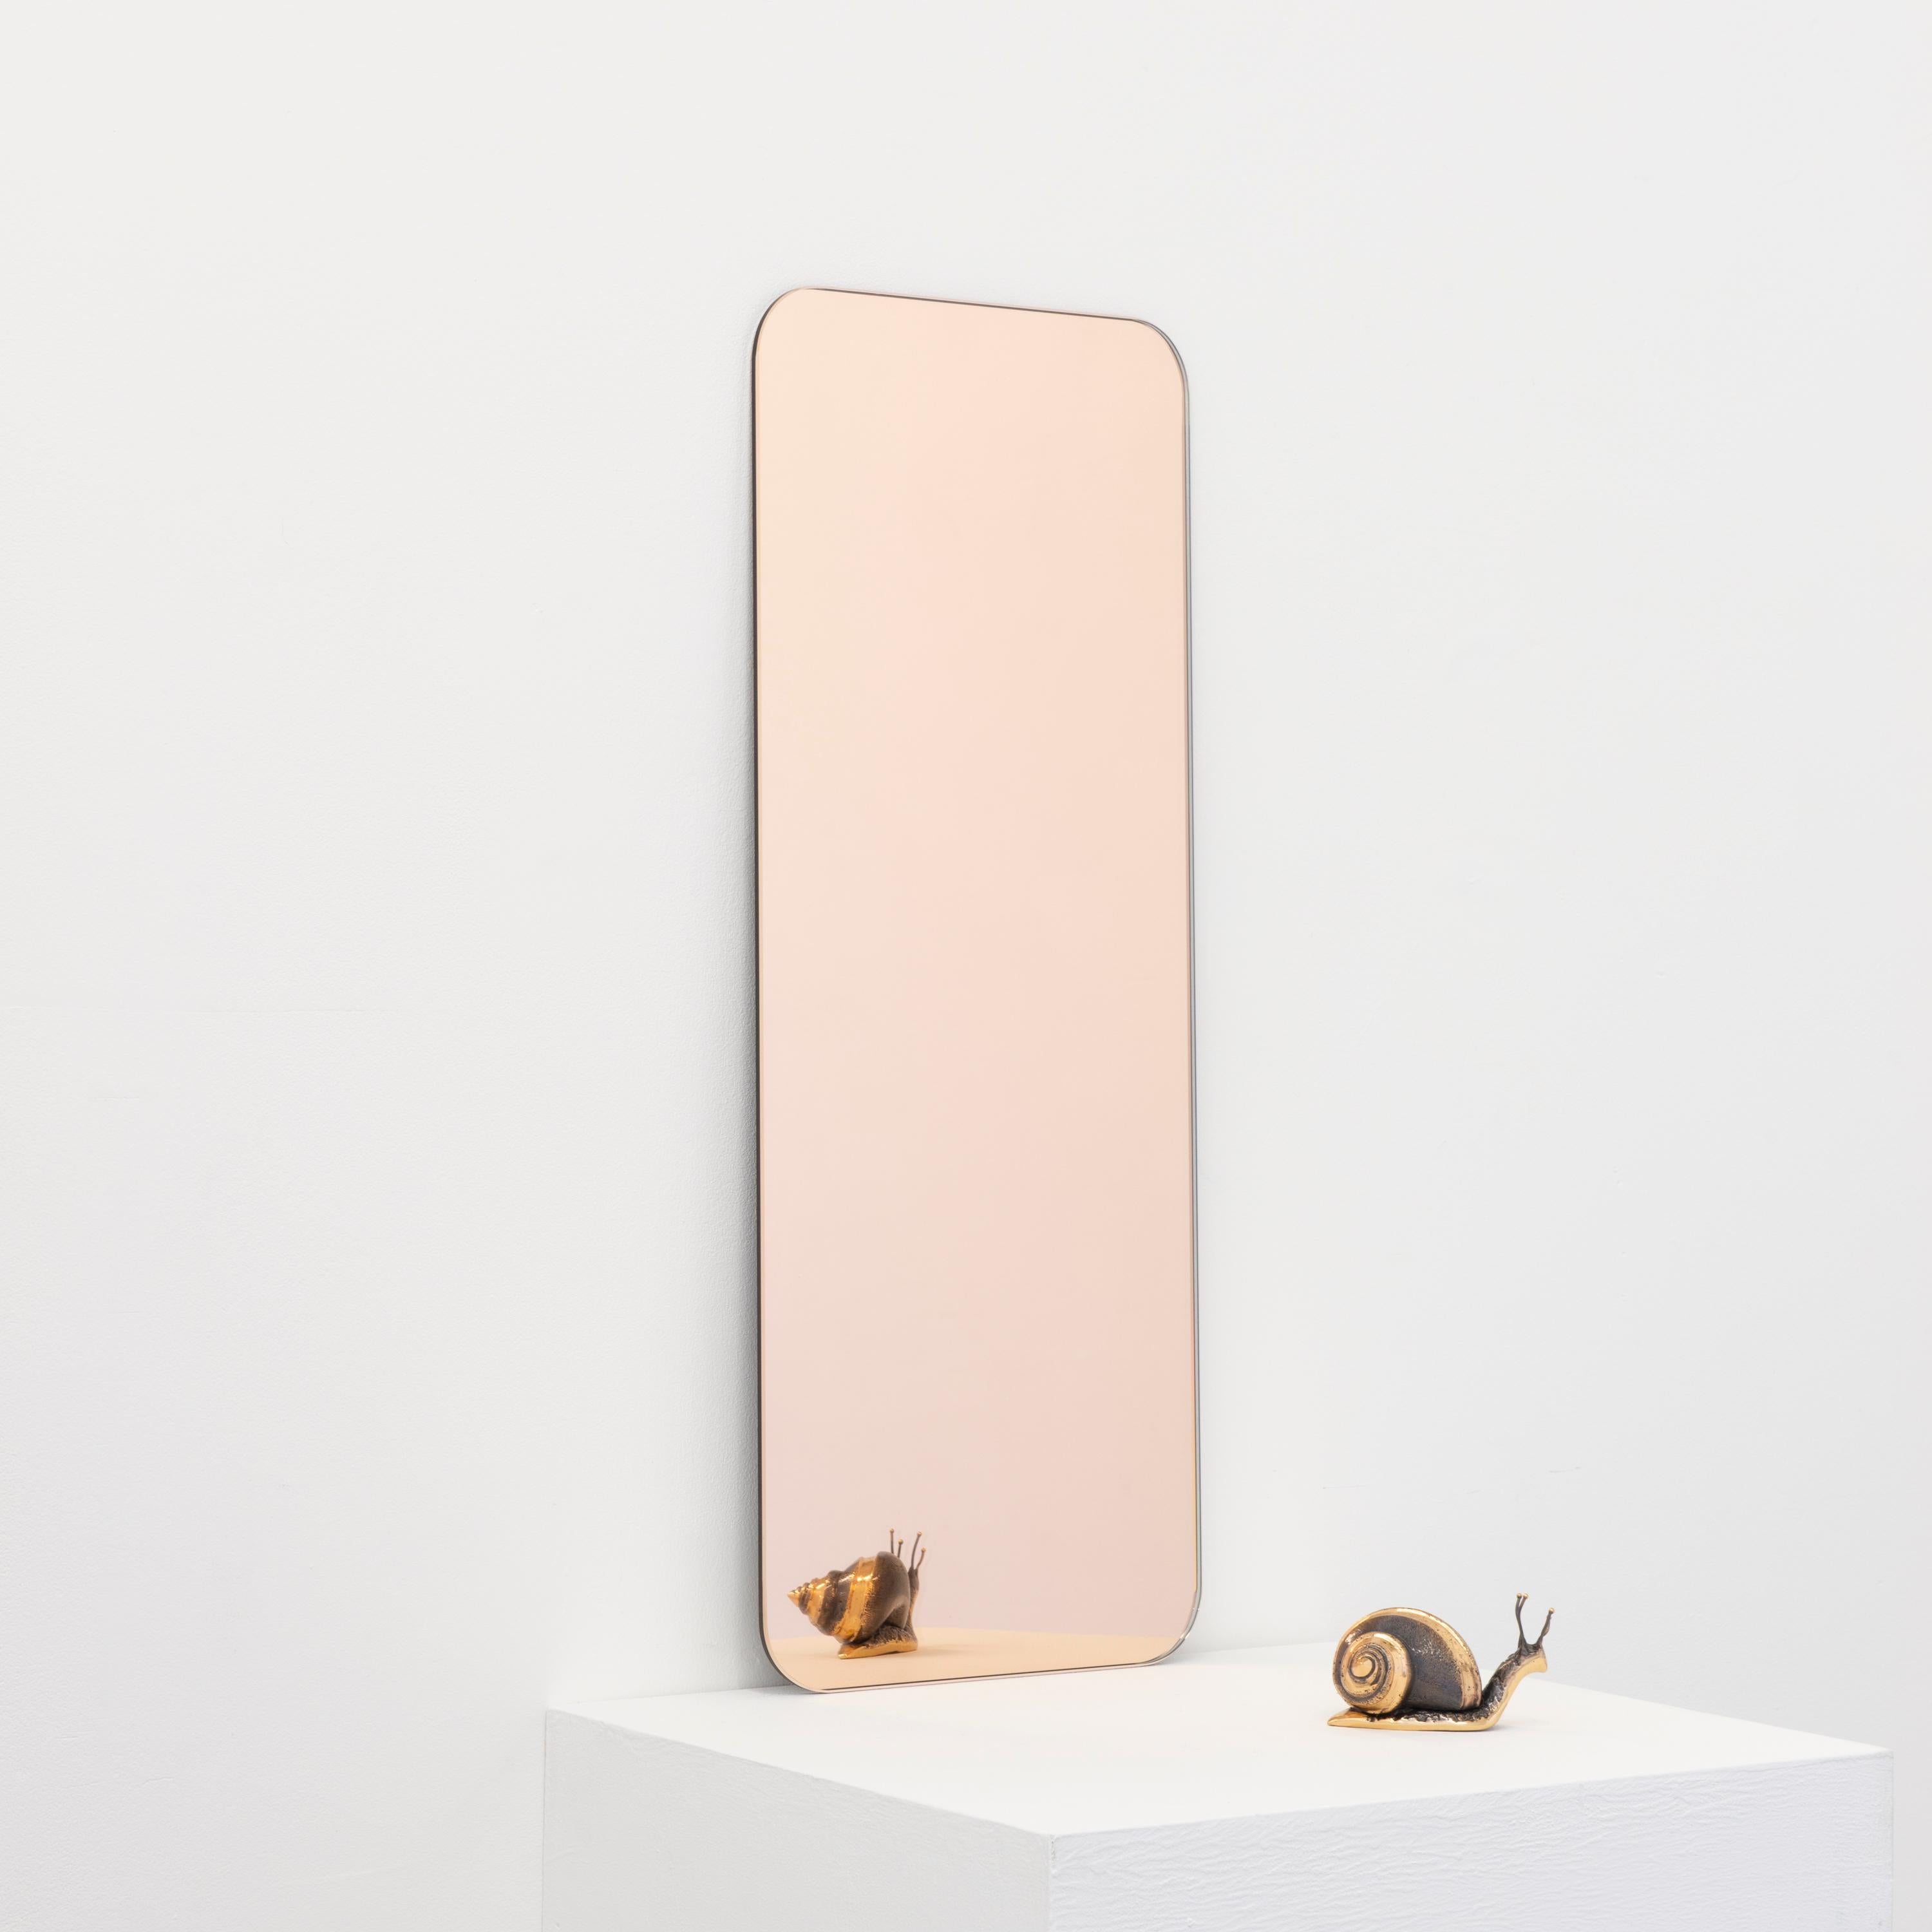 Minimalistischer Quadris™ rechteckiger, rahmenloser Spiegel in Roségold (Pfirsich) mit Schwebeeffekt. Hochwertiges Design, das dafür sorgt, dass der Spiegel perfekt parallel zur Wand steht. Entworfen und hergestellt in London, UK.

Ausgestattet mit